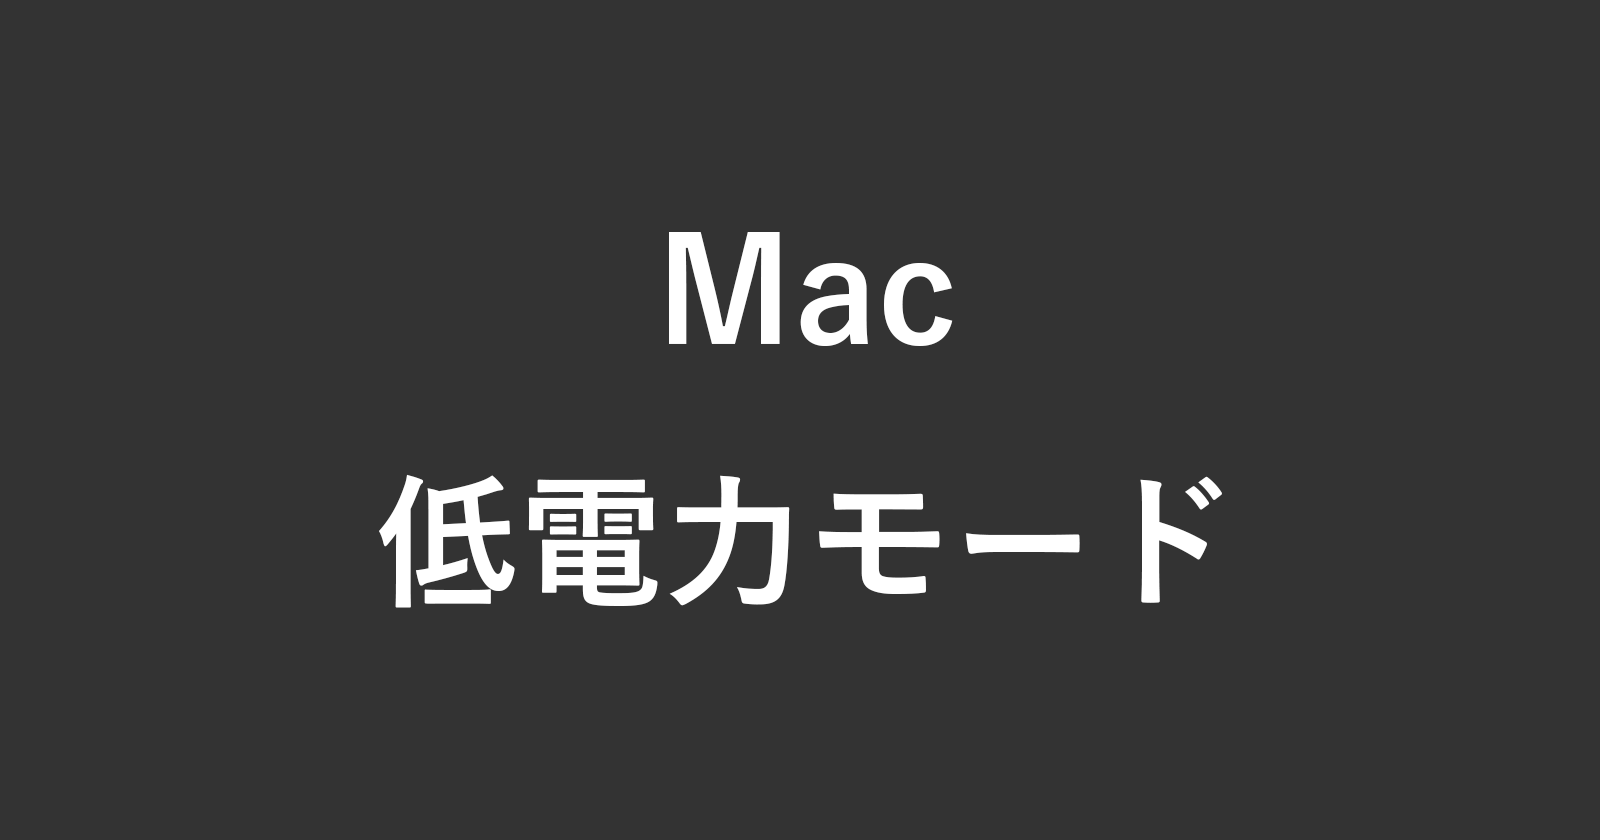 macbook low power mode